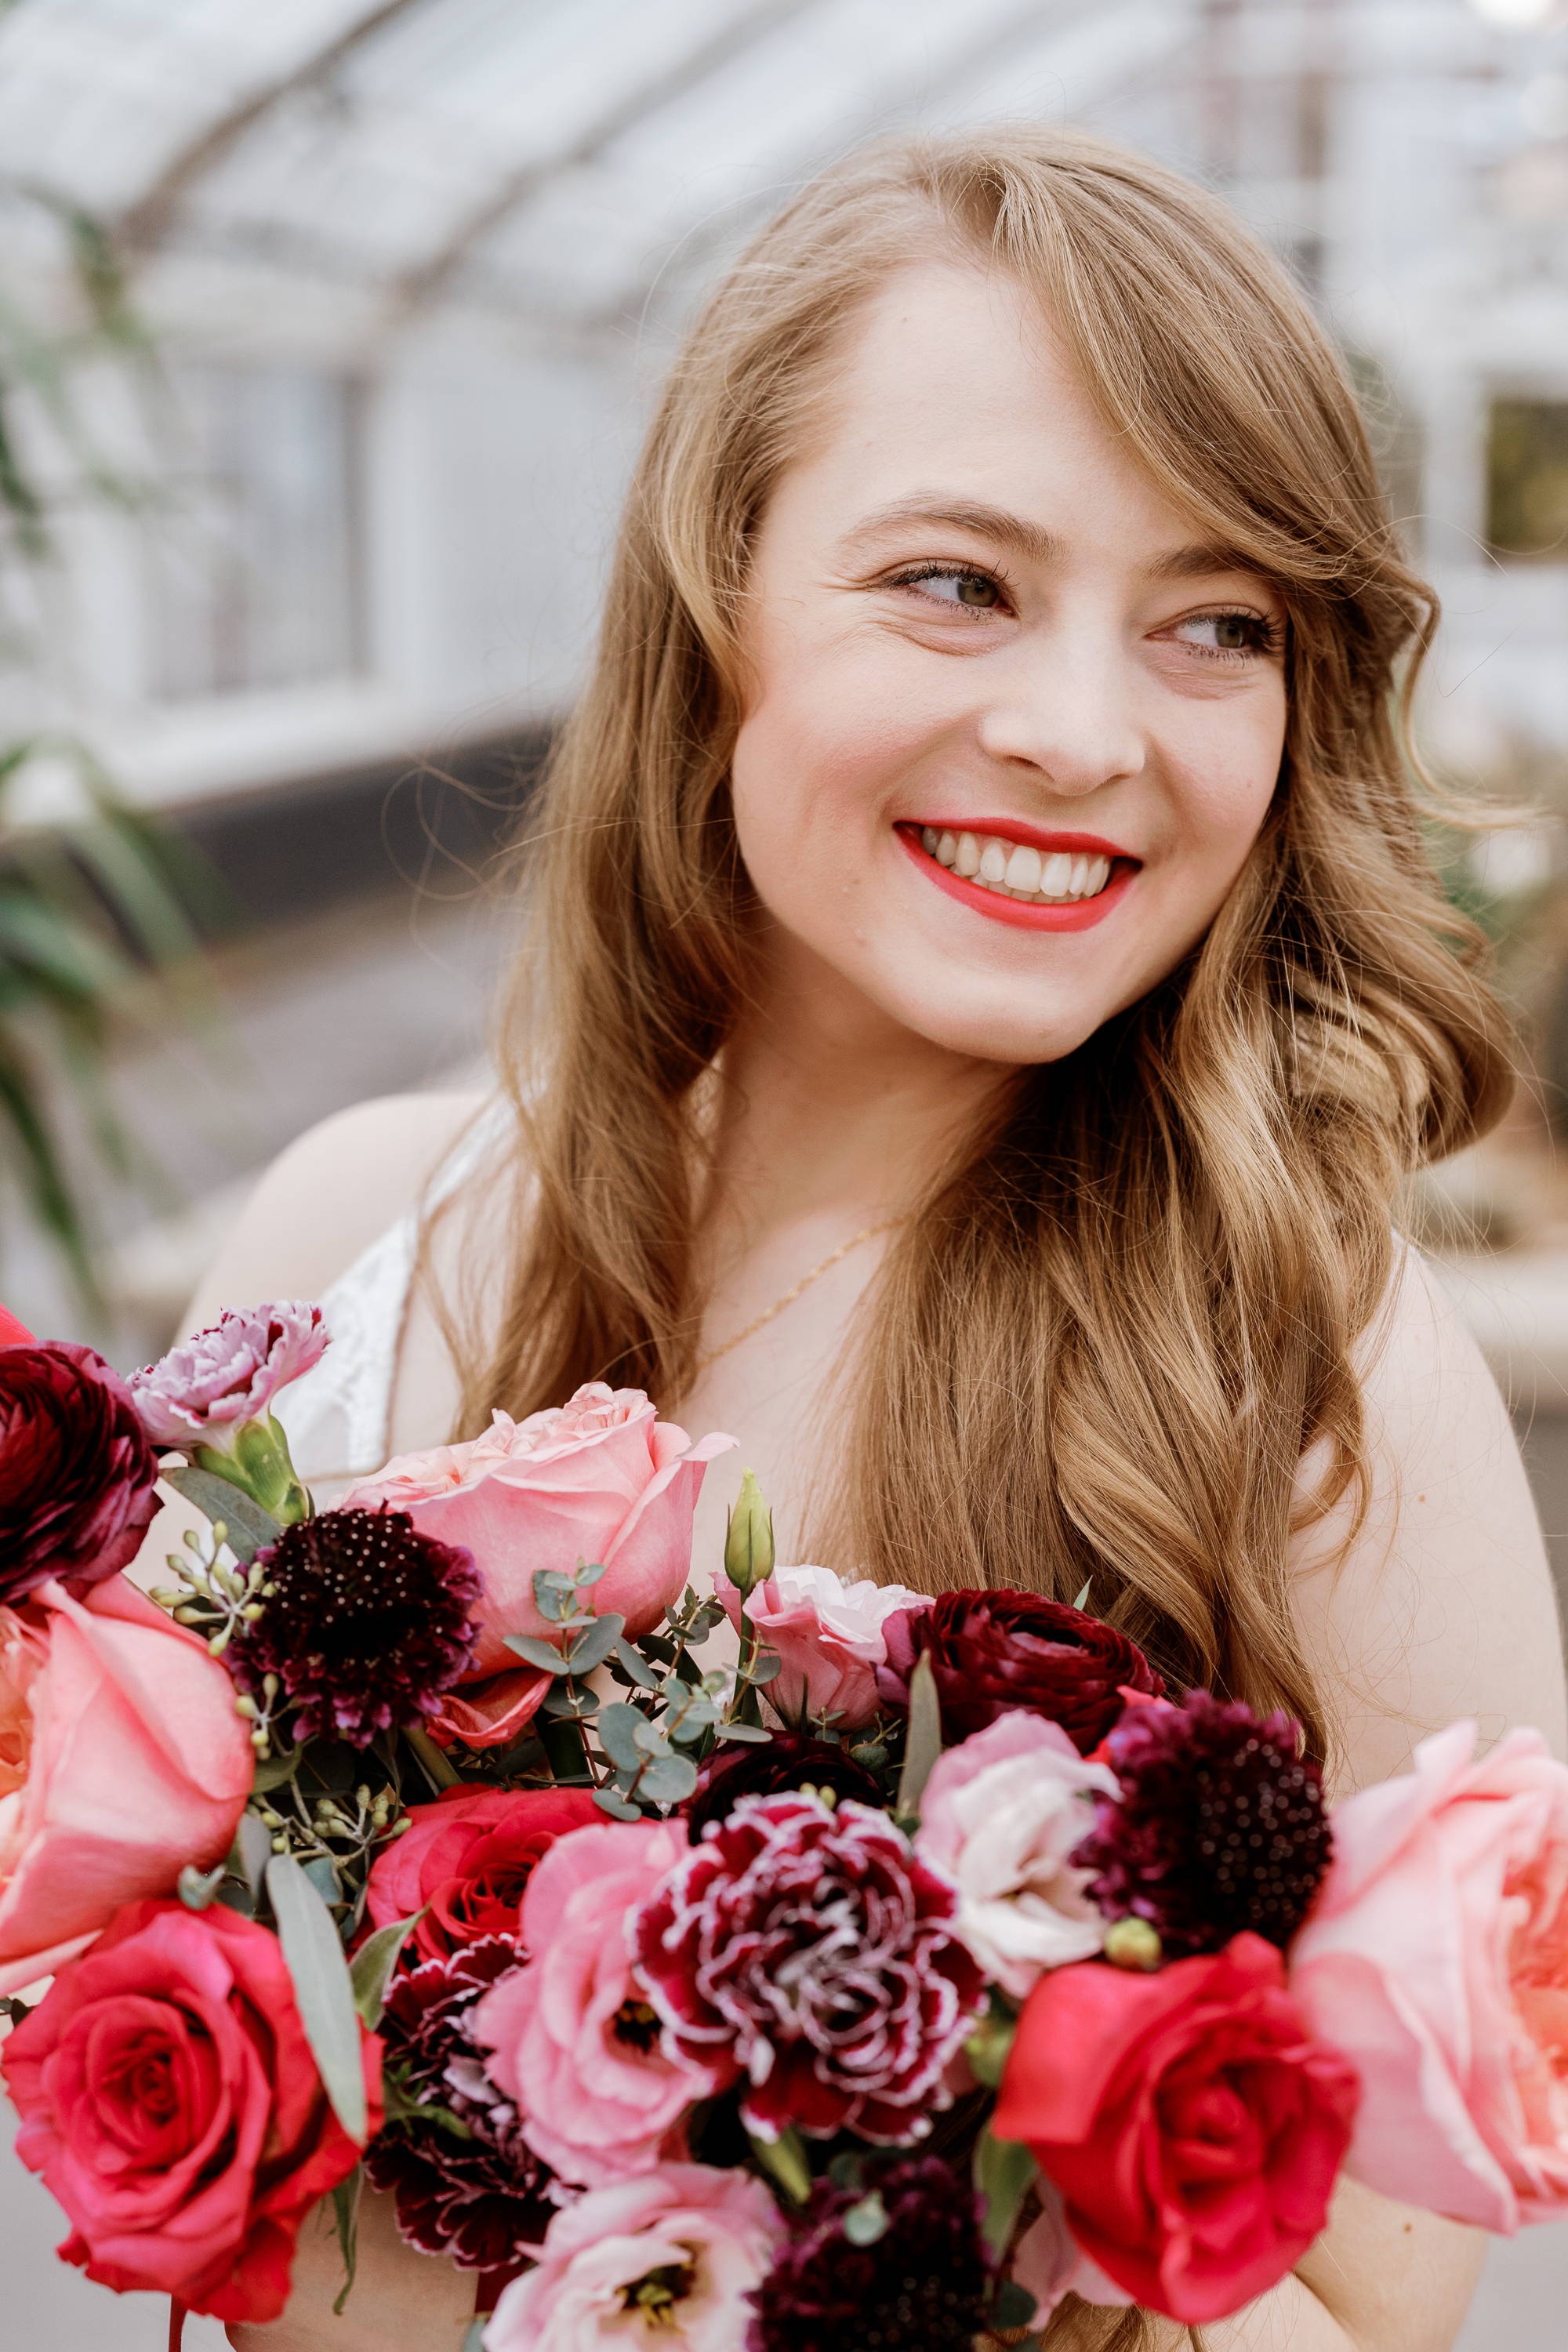 Flower Moxie Pinks & Berries Colelction, DIY wedding flowers